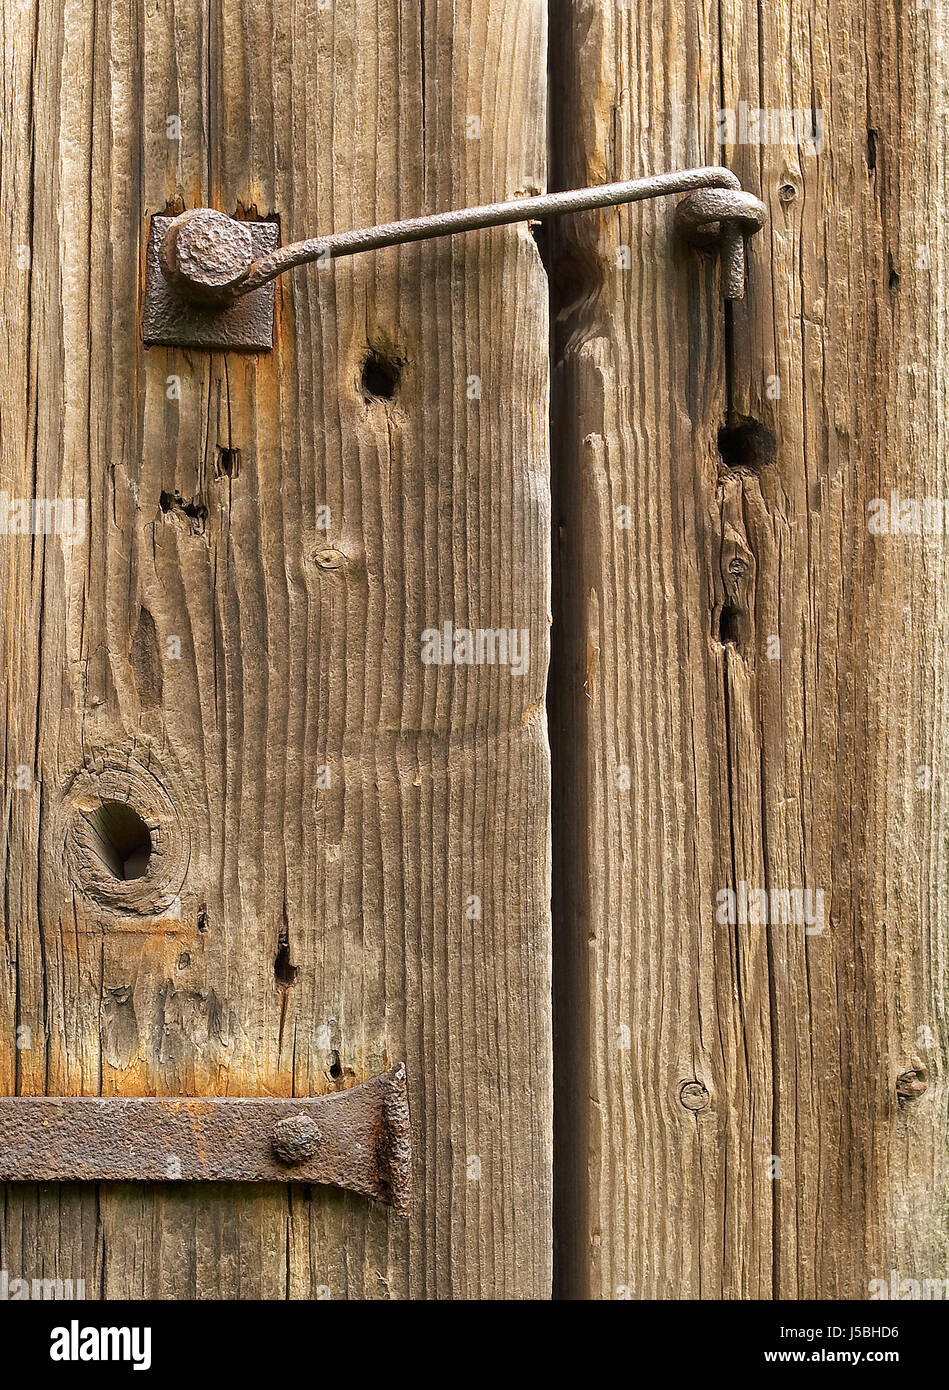 Details Holz Ziel Durchgang Tor Archgway Gantry Detail Eintritt Eisen krank Stockfoto